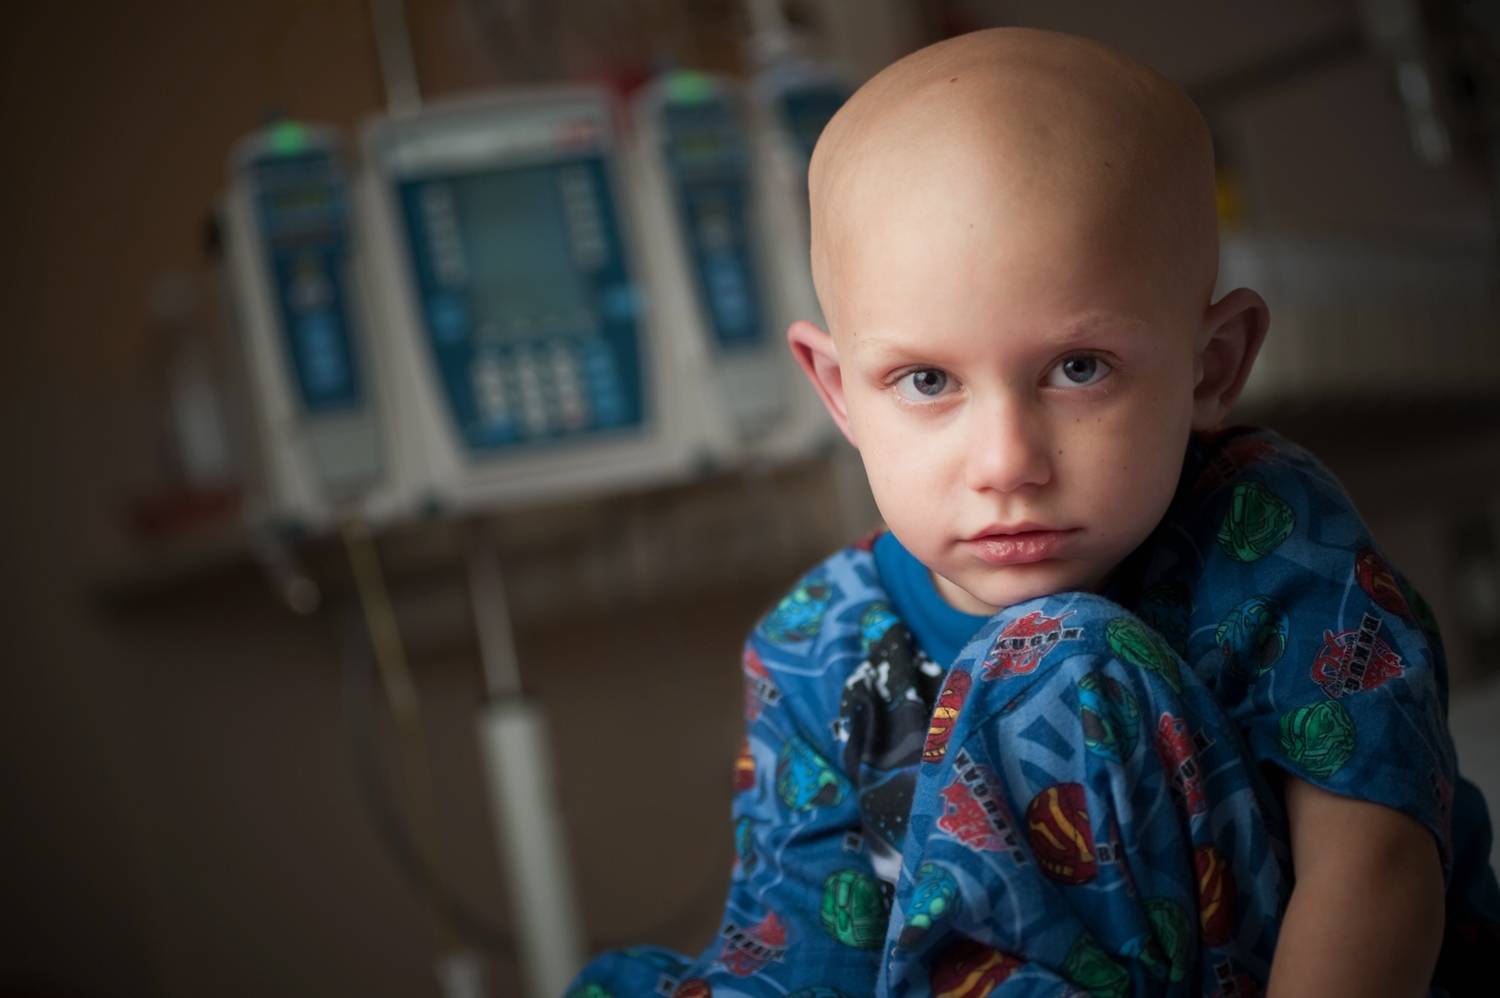  أعراض تدل على إصابة الأطفال بالسرطان وطرق في المتناول تقي  من الأورام